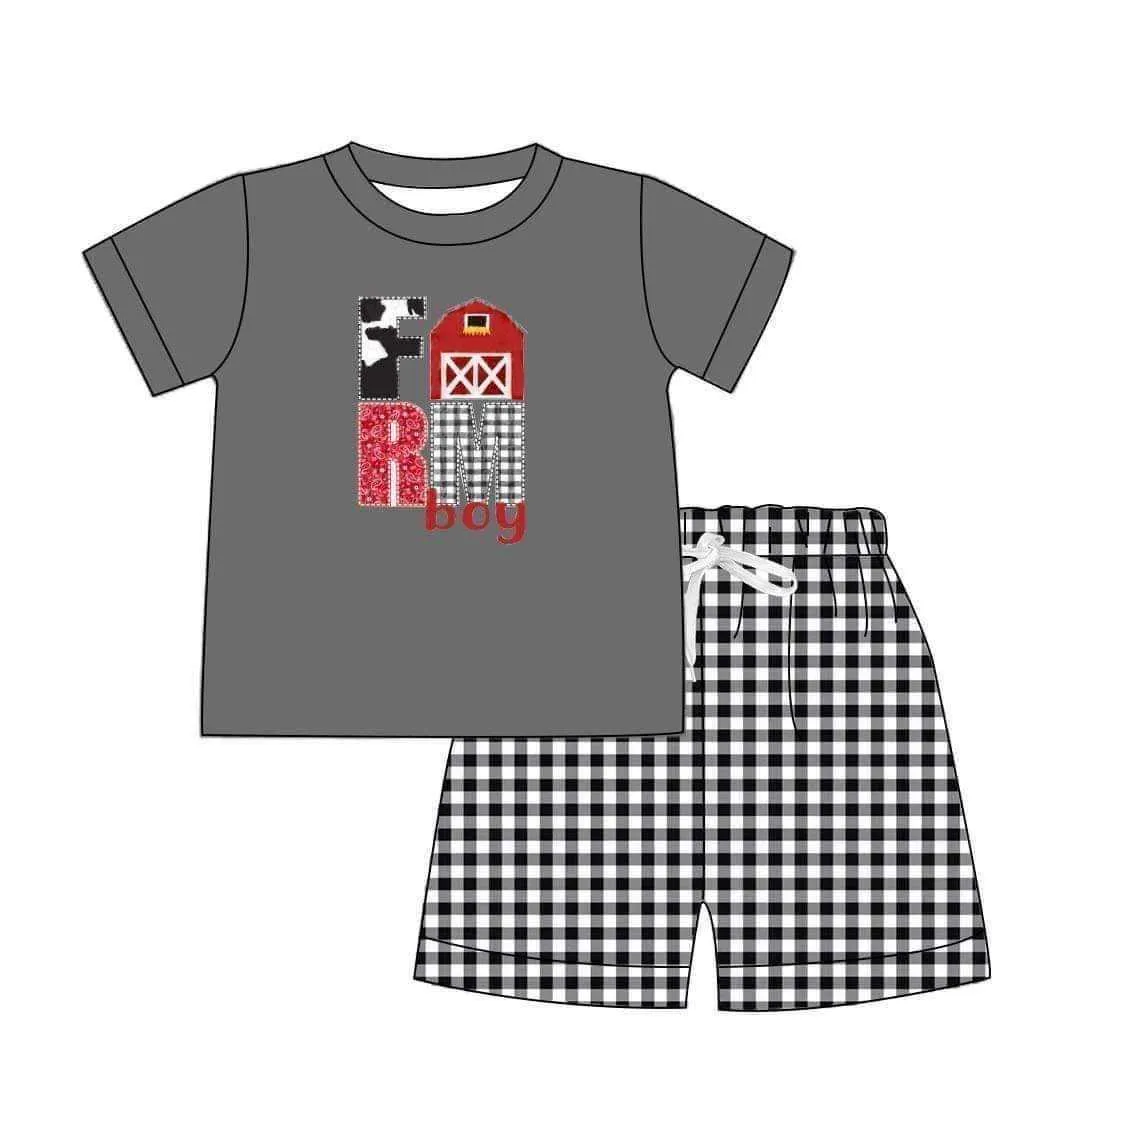 Vêtements d'été Haut à manches courtes noir et short à carreaux noirs Motif de broderie de ferme rouge Vêtements pour garçons X0802